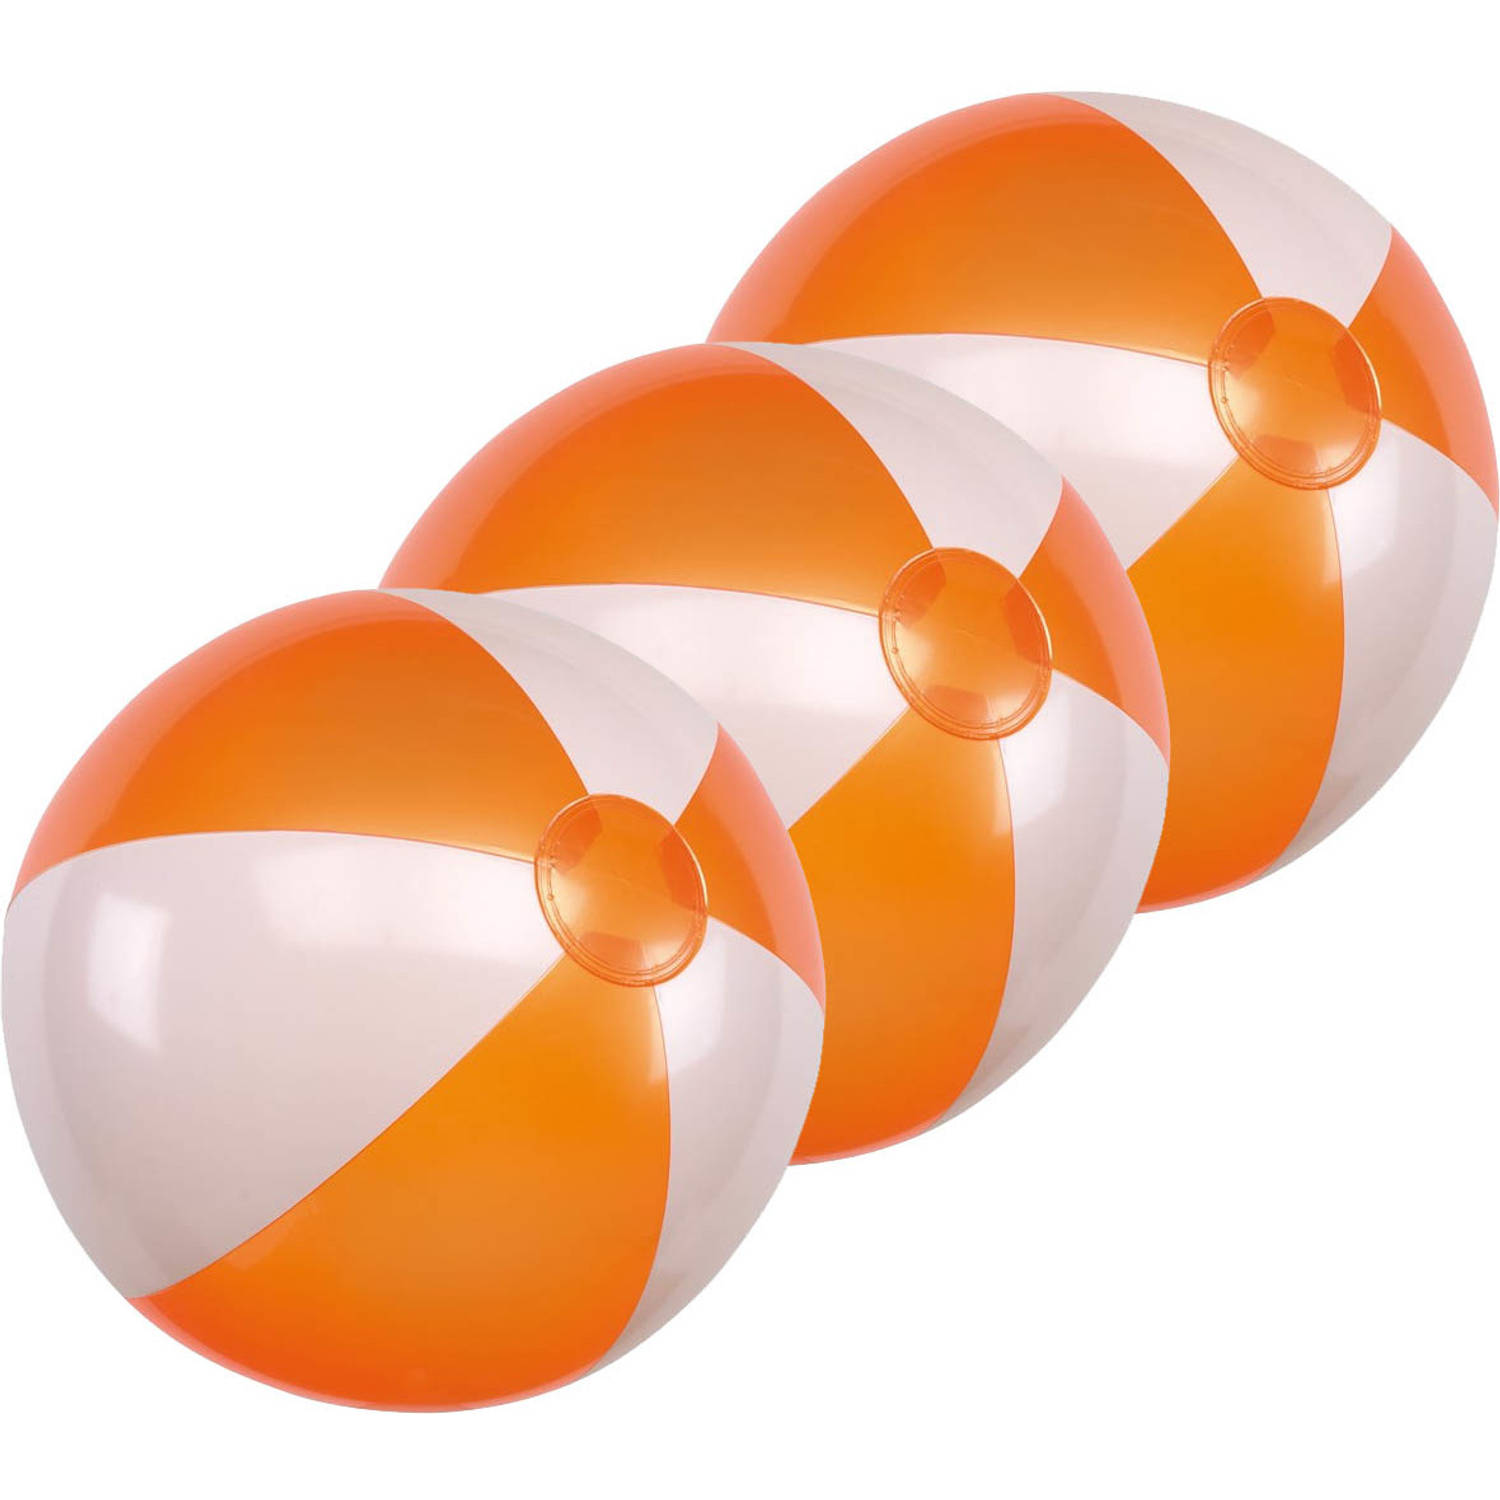 Voorwaardelijk stuk het formulier 3x Opblaasbare strandballen oranje/wit 28 cm speelgoed - Strandballen |  Blokker